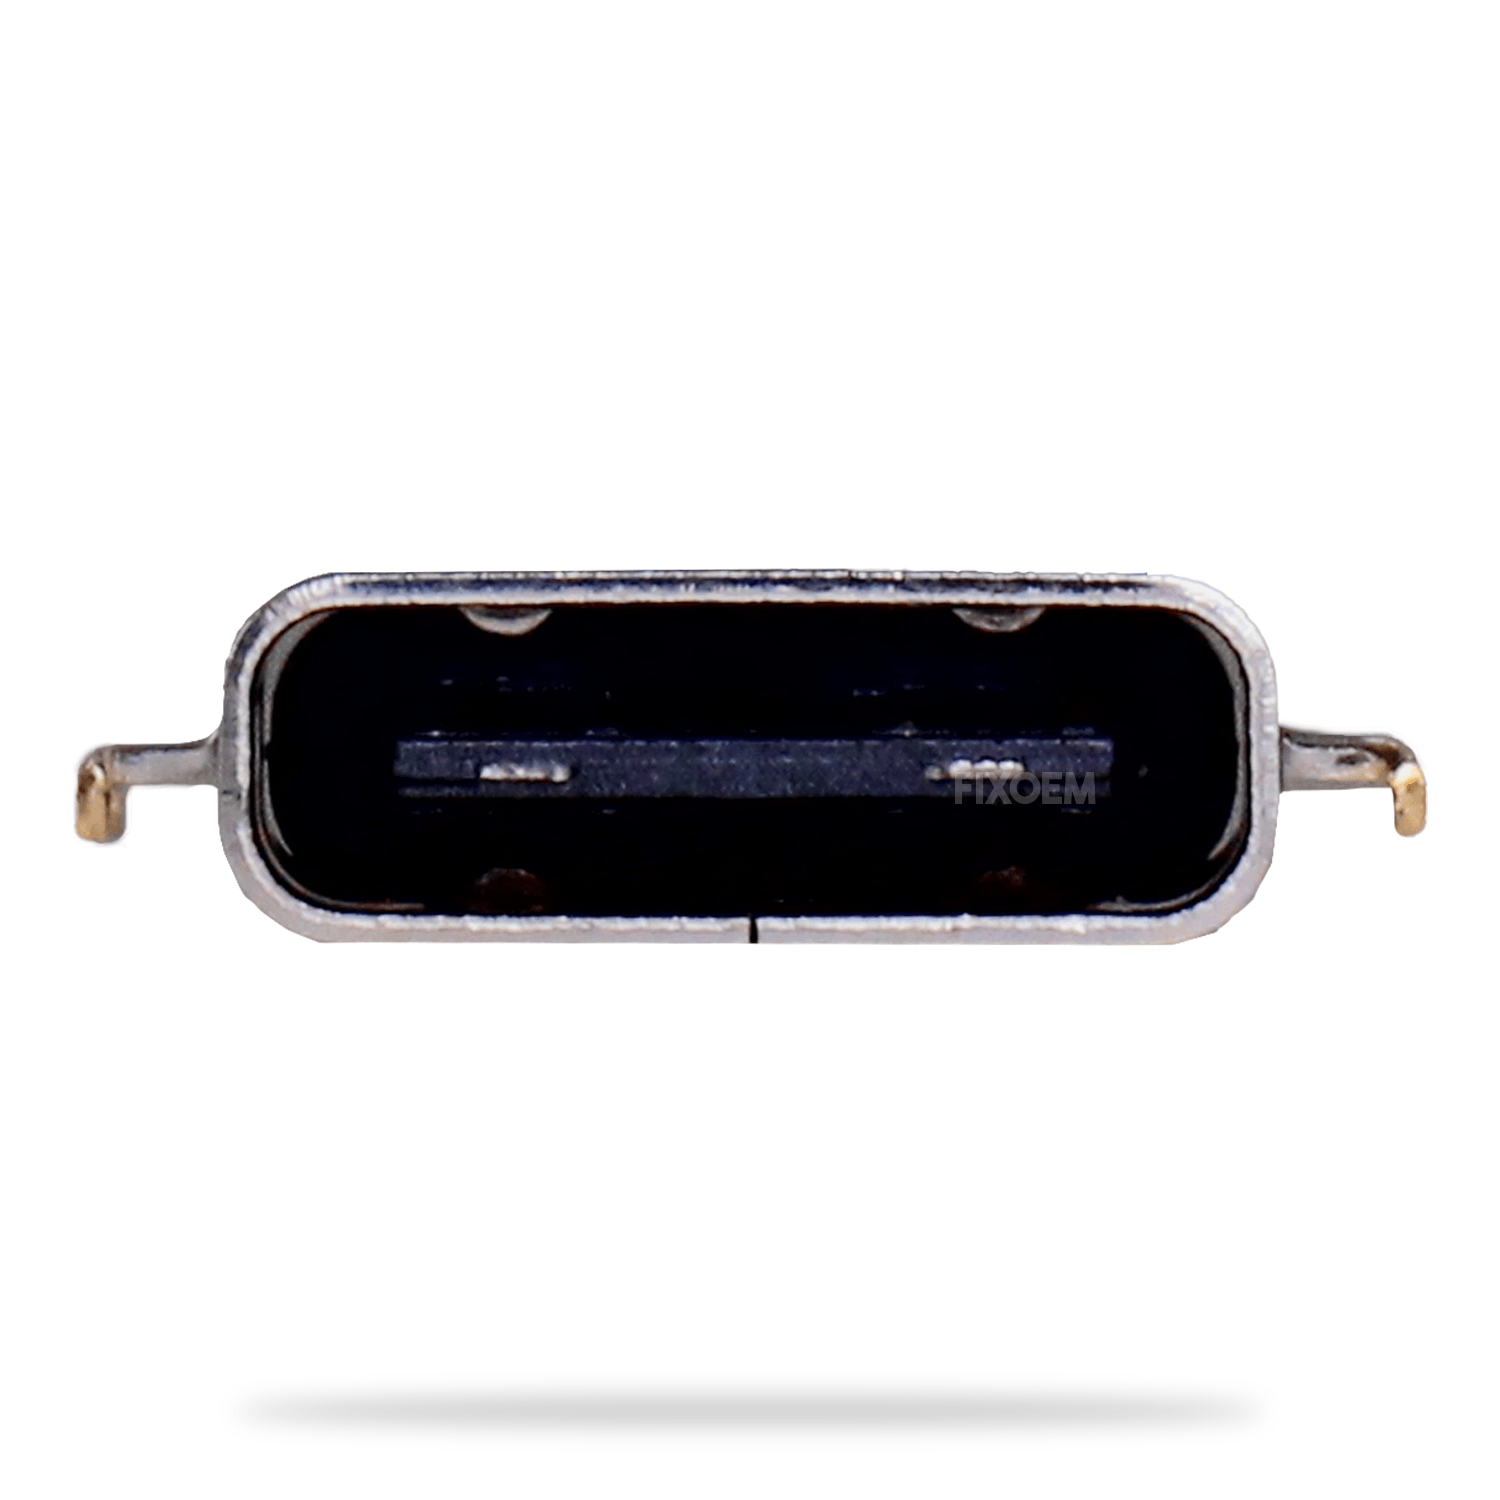 Pin Carga Sony Xa1 Ultra a solo $ 80.00 Refaccion y puestos celulares, refurbish y microelectronica.- FixOEM